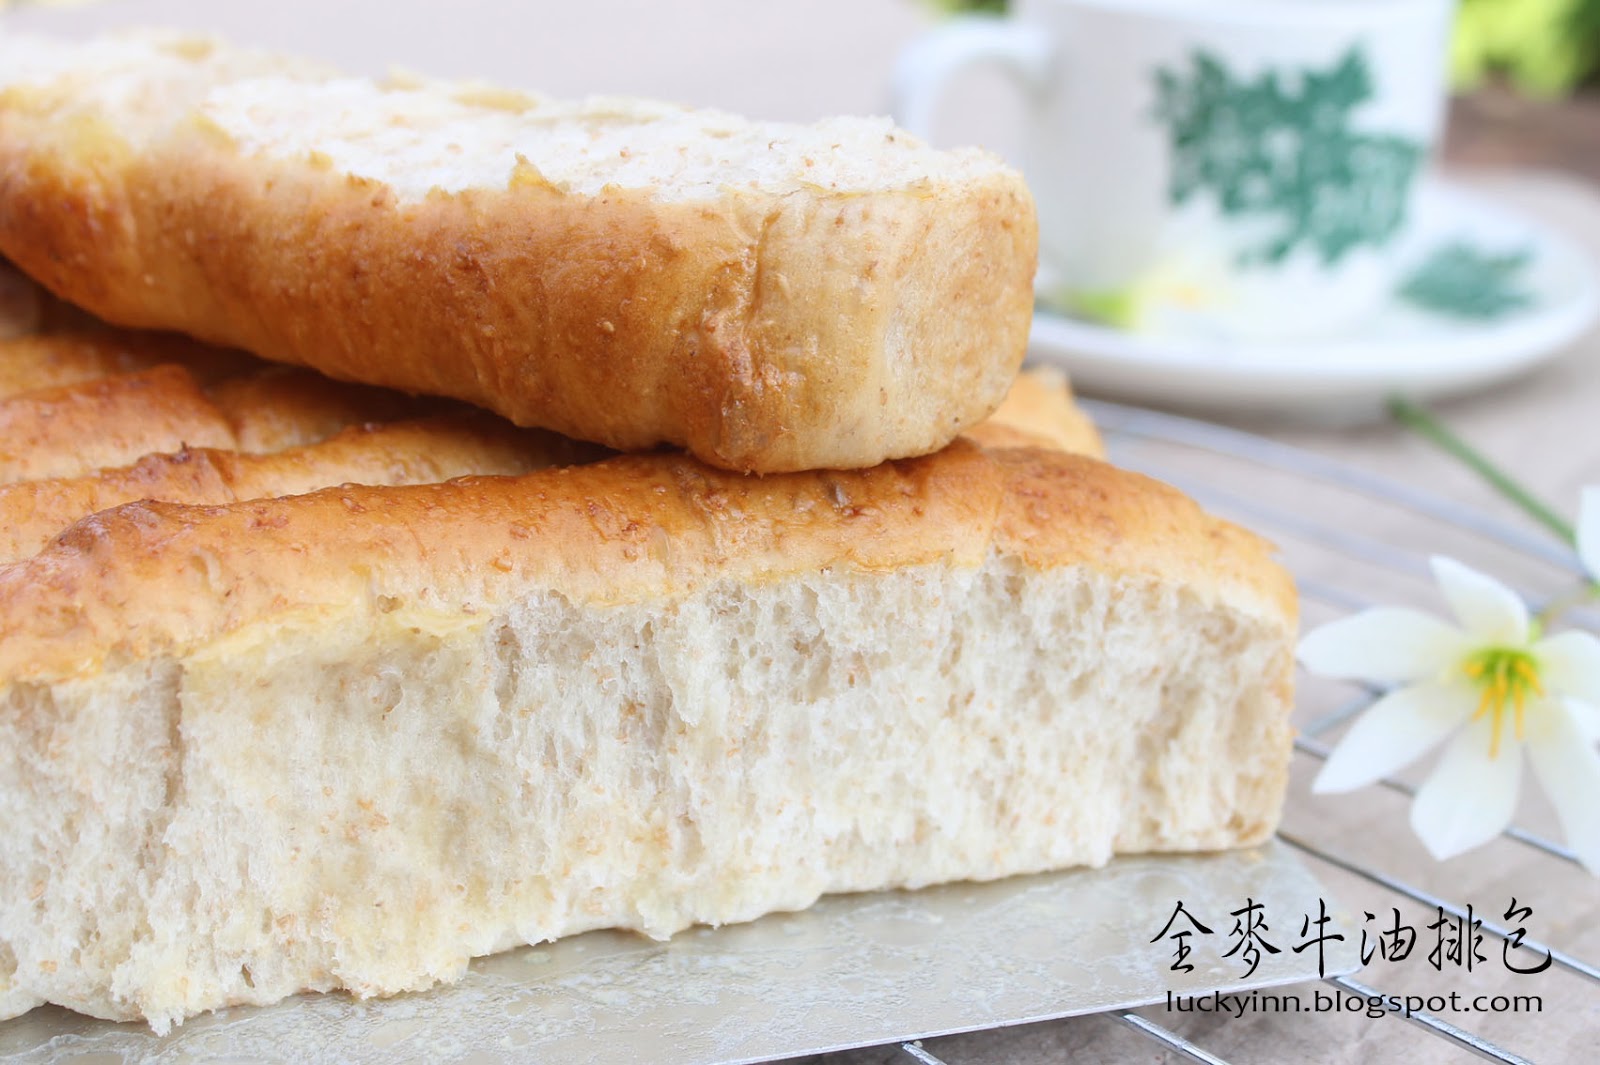 Lucky Inn: 全麦牛油排包 （中种）Wholemeal Butter Bread